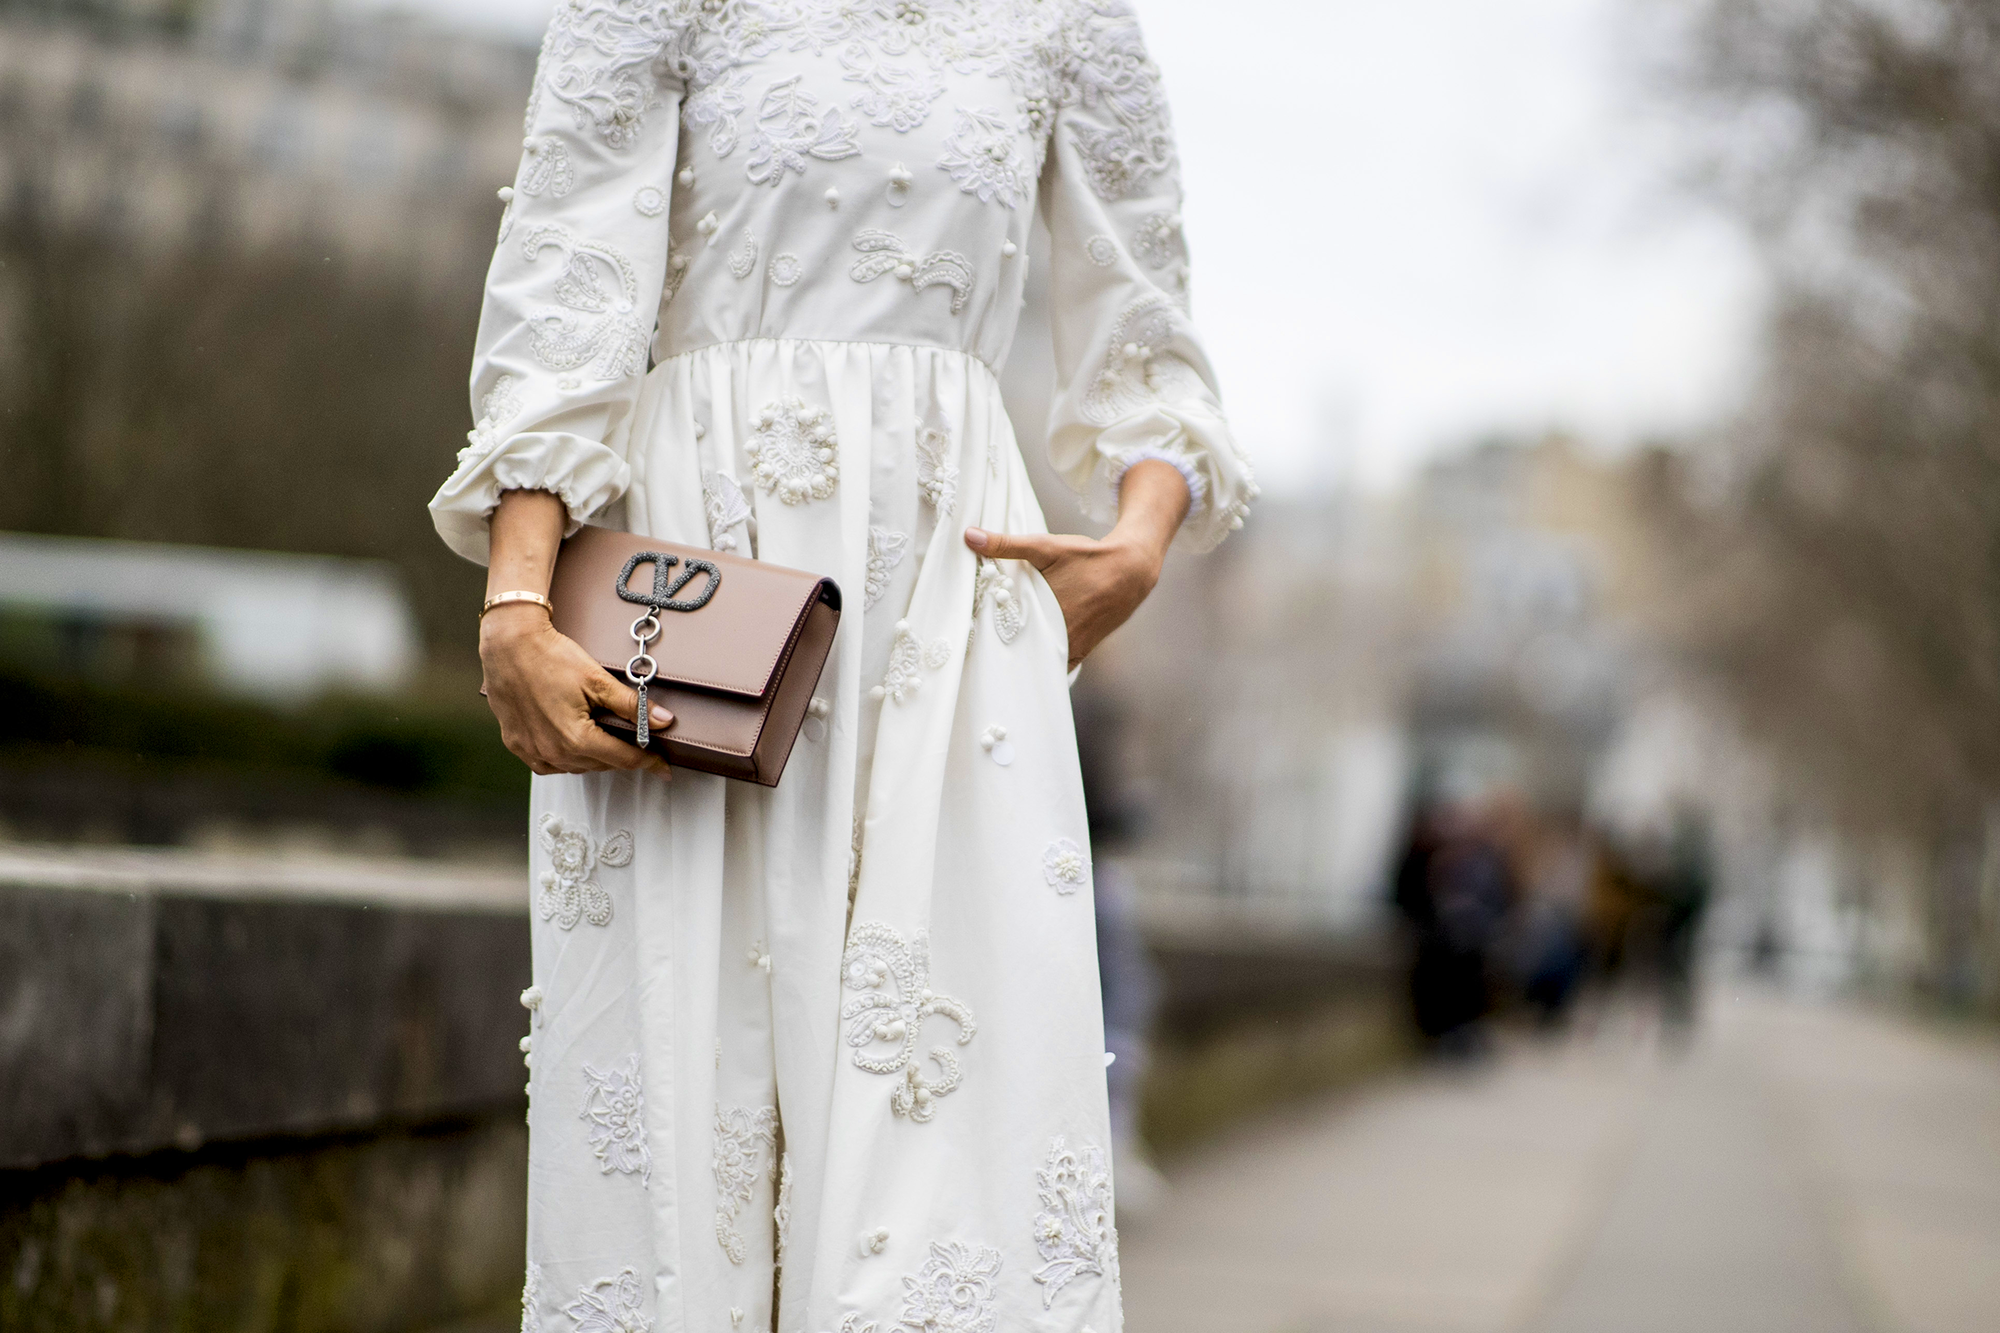 Vestiti Zara 2019: l'abito bianco è tendenza moda Primavera Estate 2019